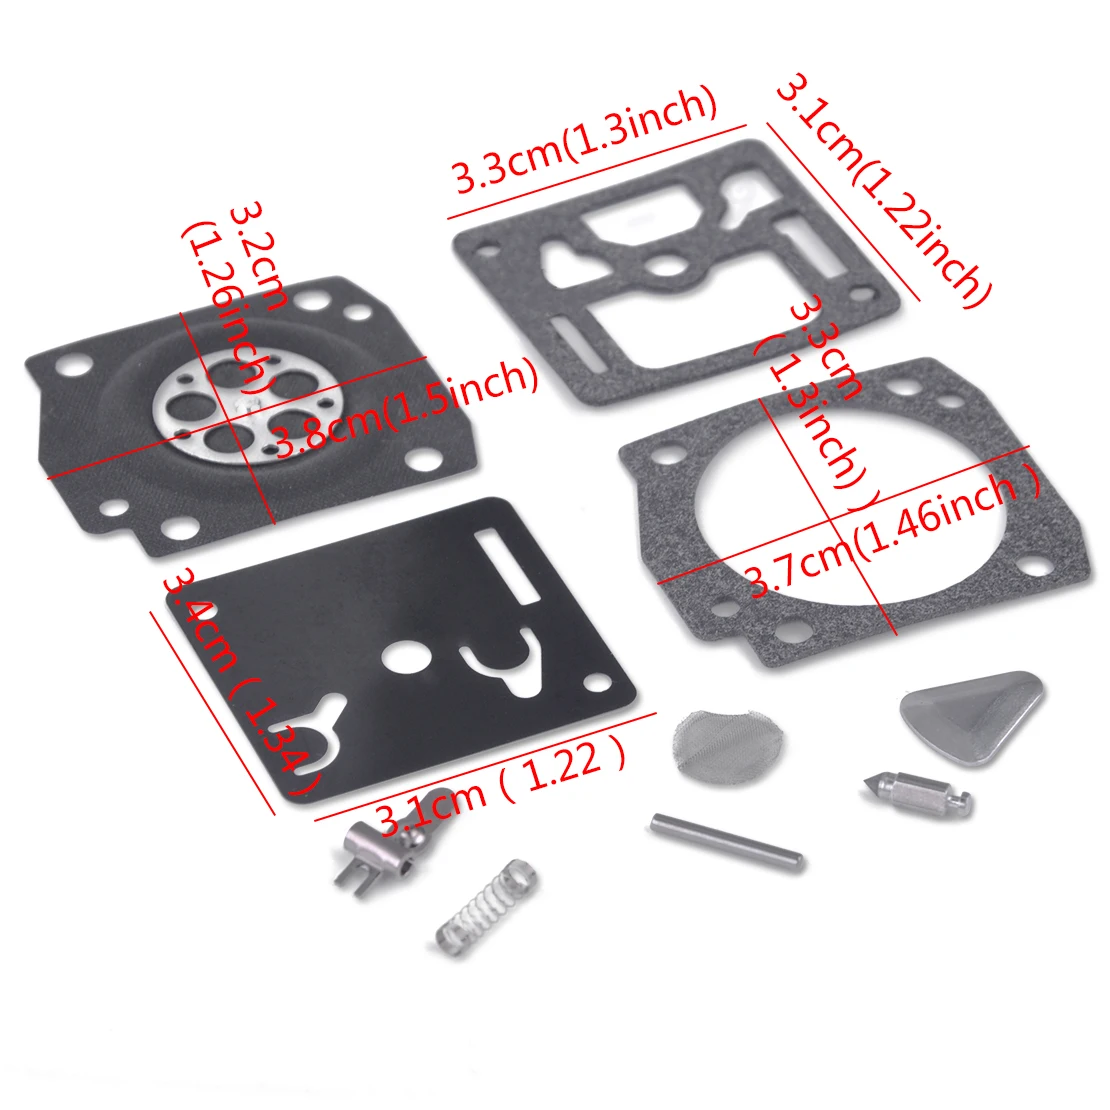 LETAOSK Nuevo Carburador Carburador Reconstruir Kit de Reparación de Ajuste para Stihl 034 044 036 MS340 MS360 Motosierra 1